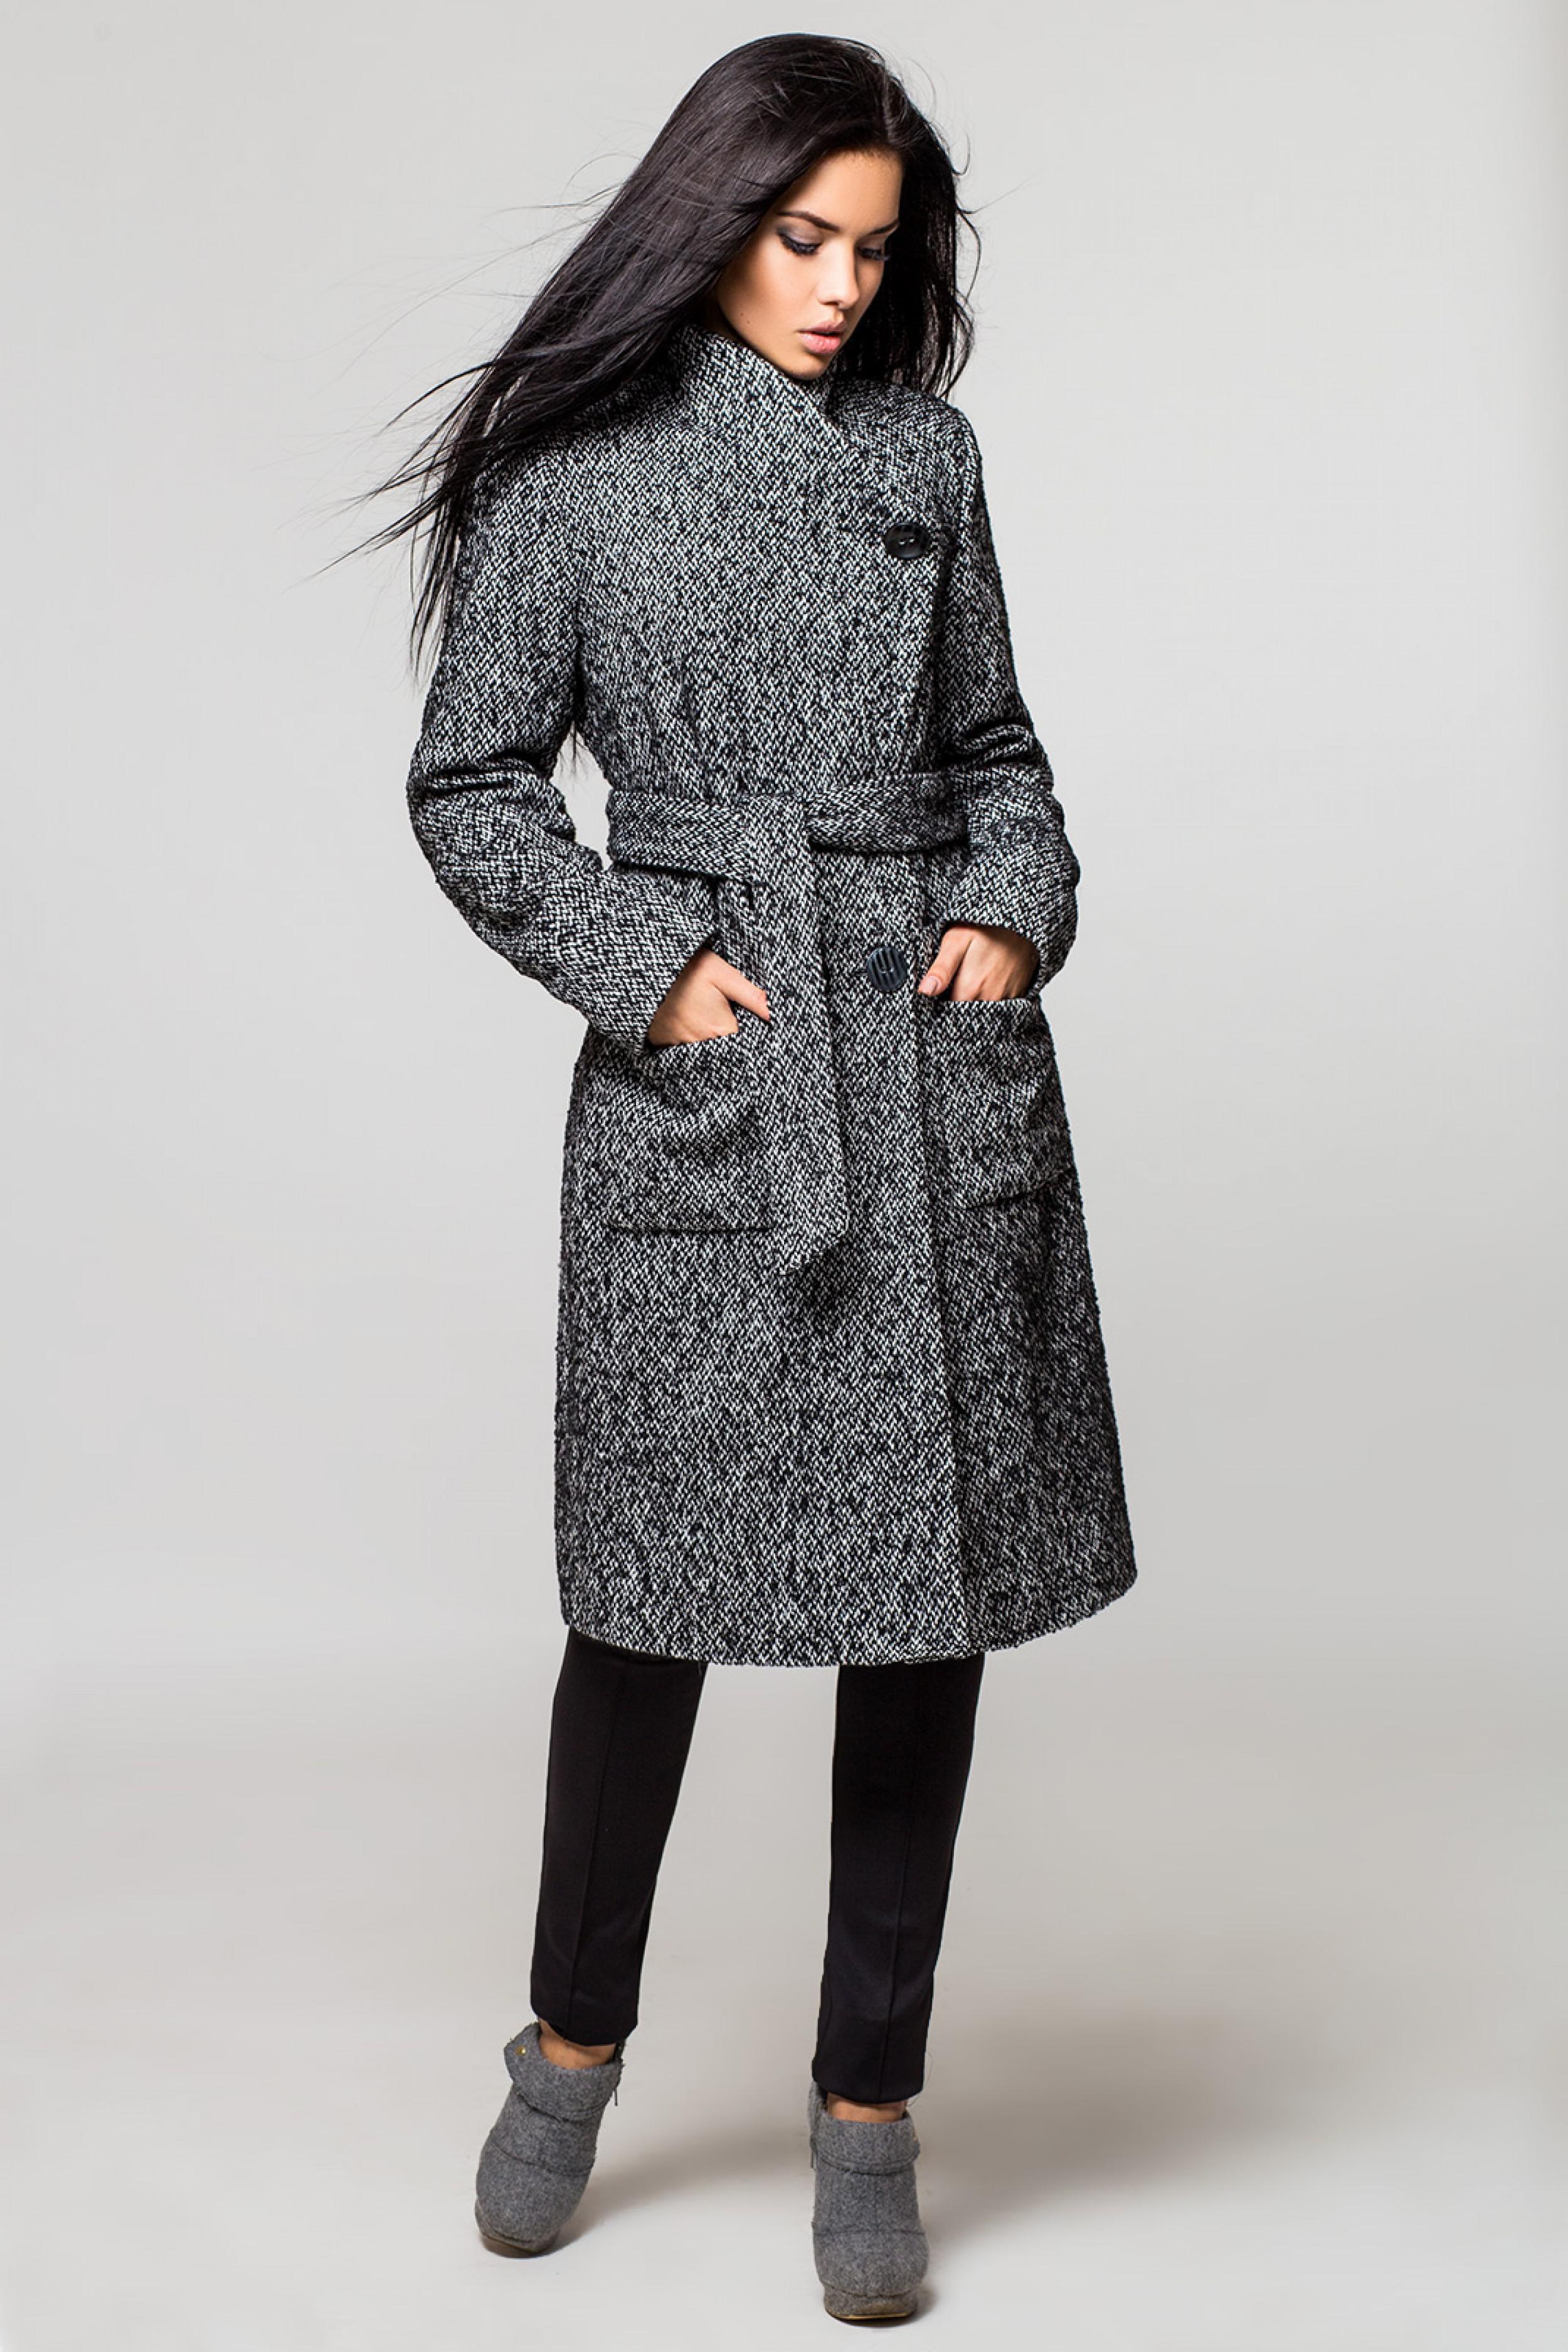 Серое пальто молодежное: с чем носить женское пальто, шарф и аксессуары к нему, пальто 2021, длинное, до колена, твидовое, шерстяное